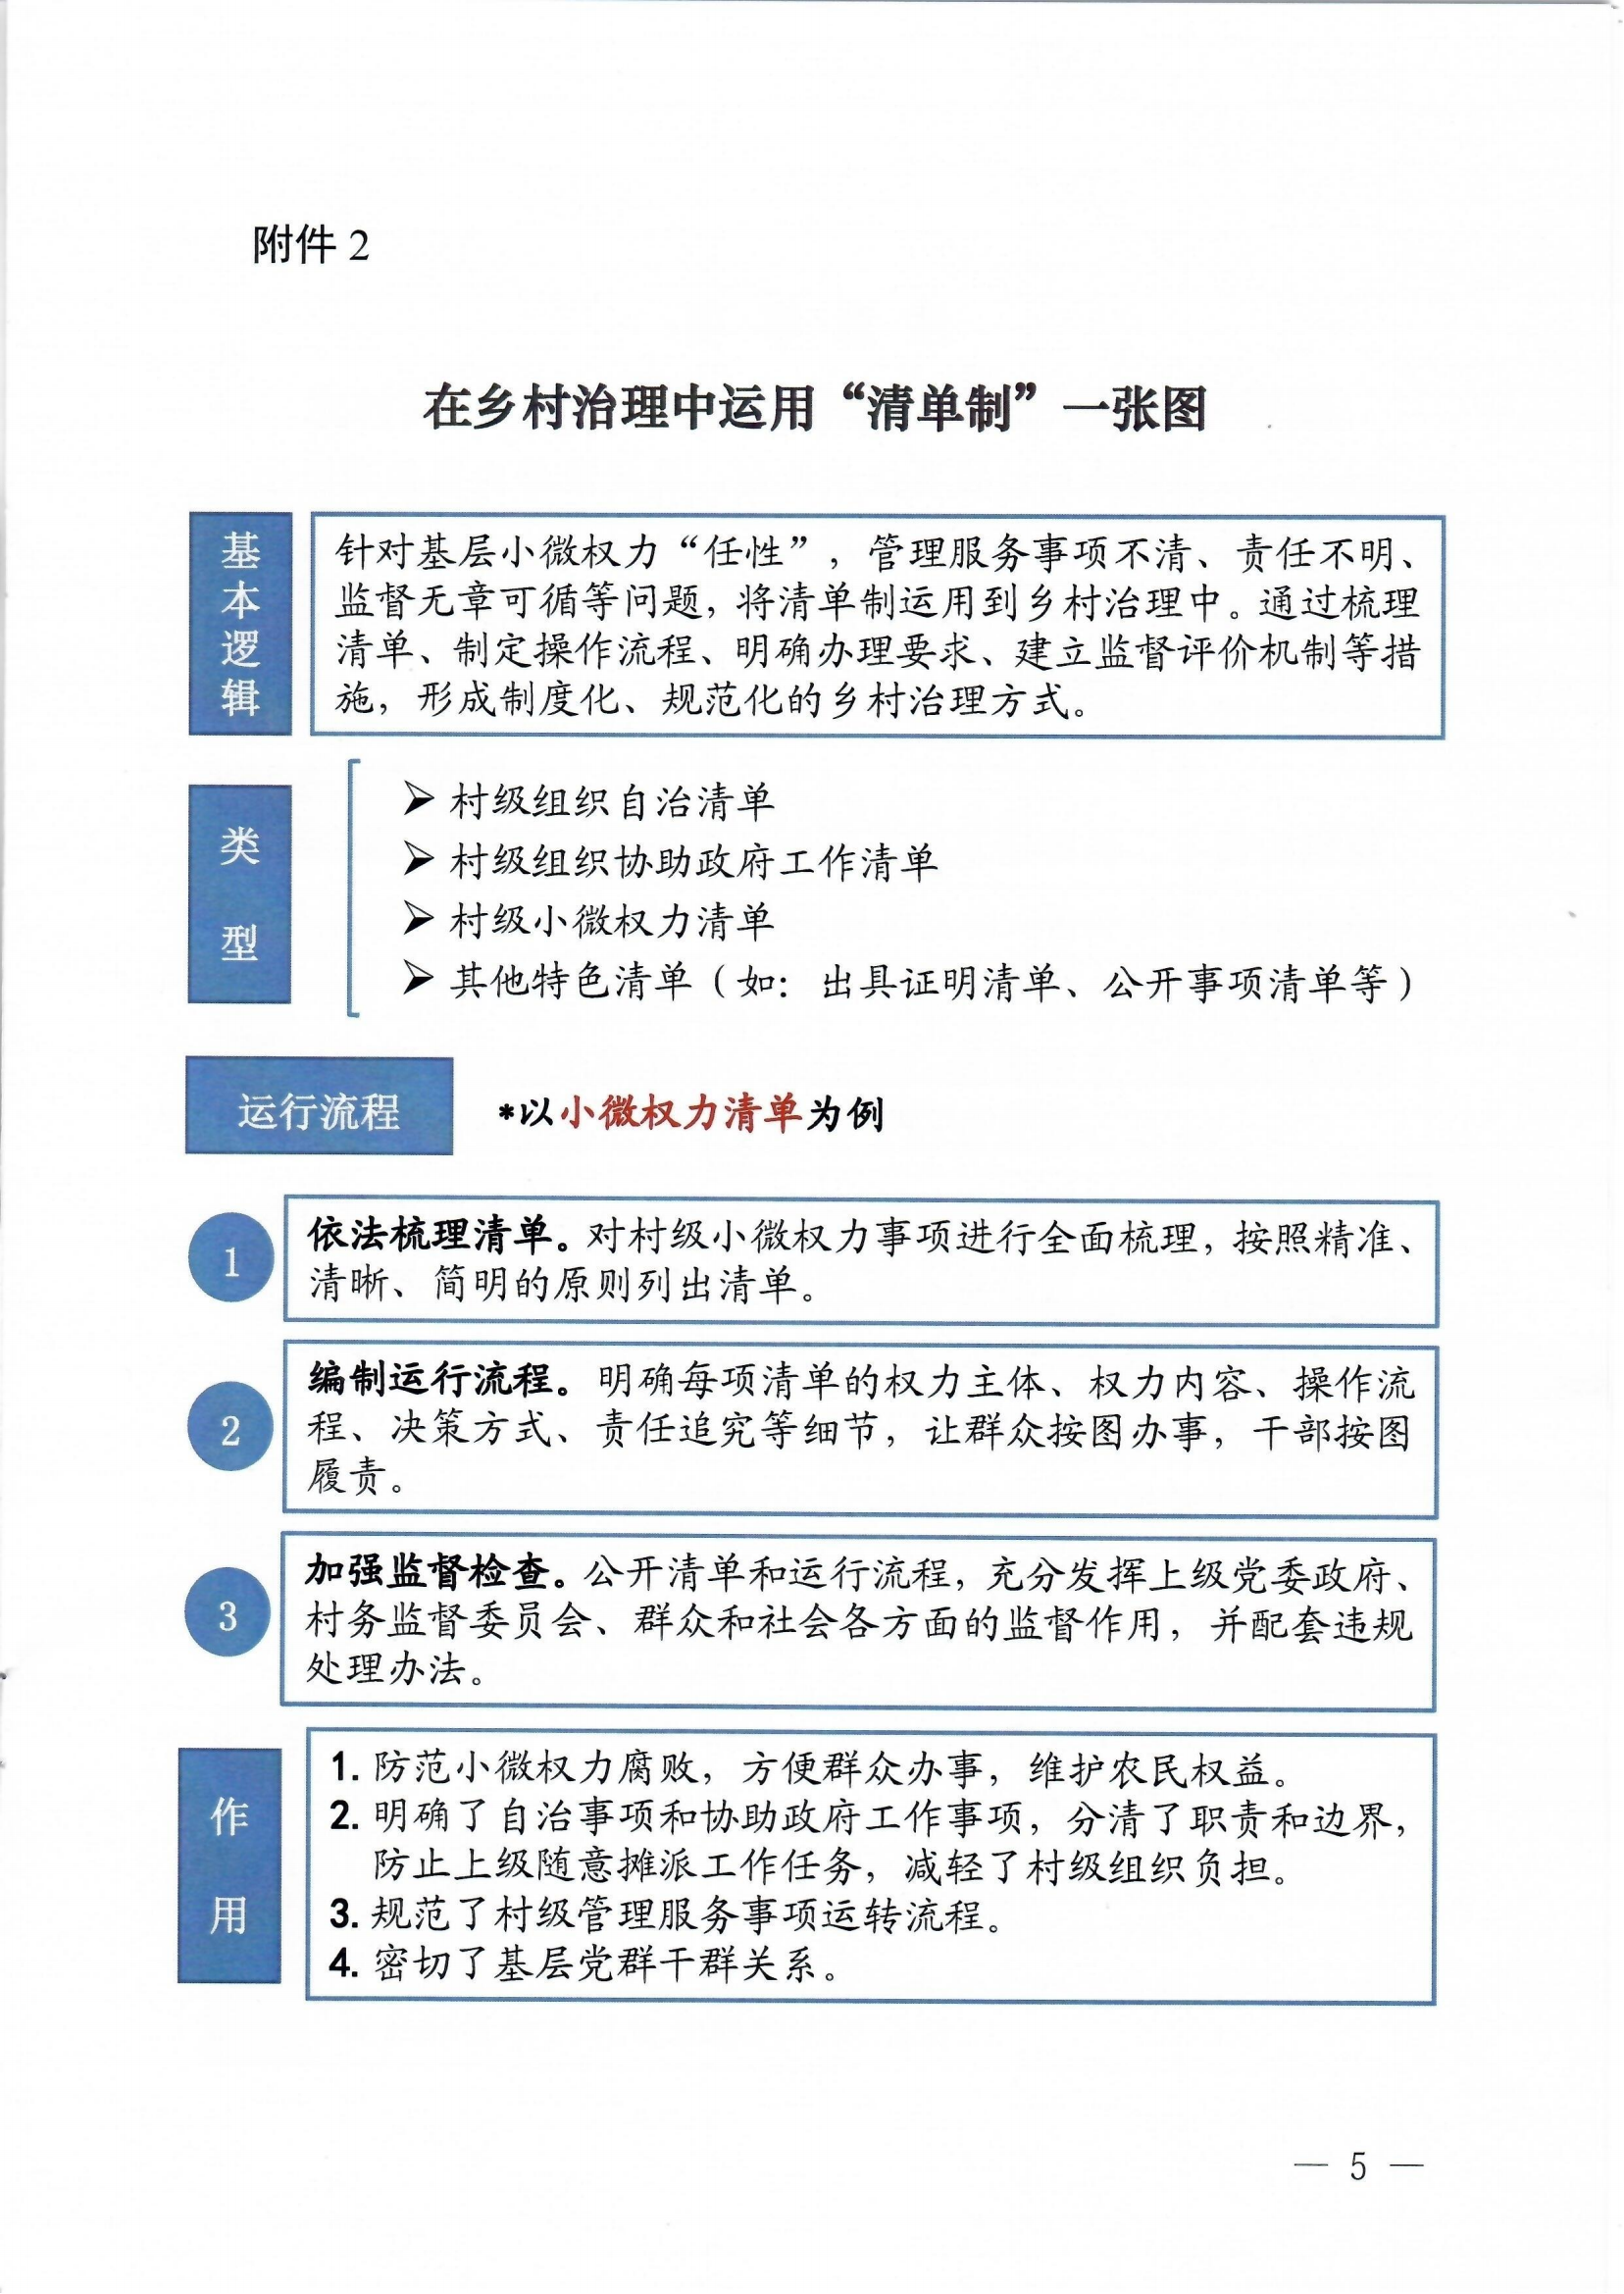 农业农村部、国家乡村振兴局联合发布乡村治理典型方式工作指南(图5)